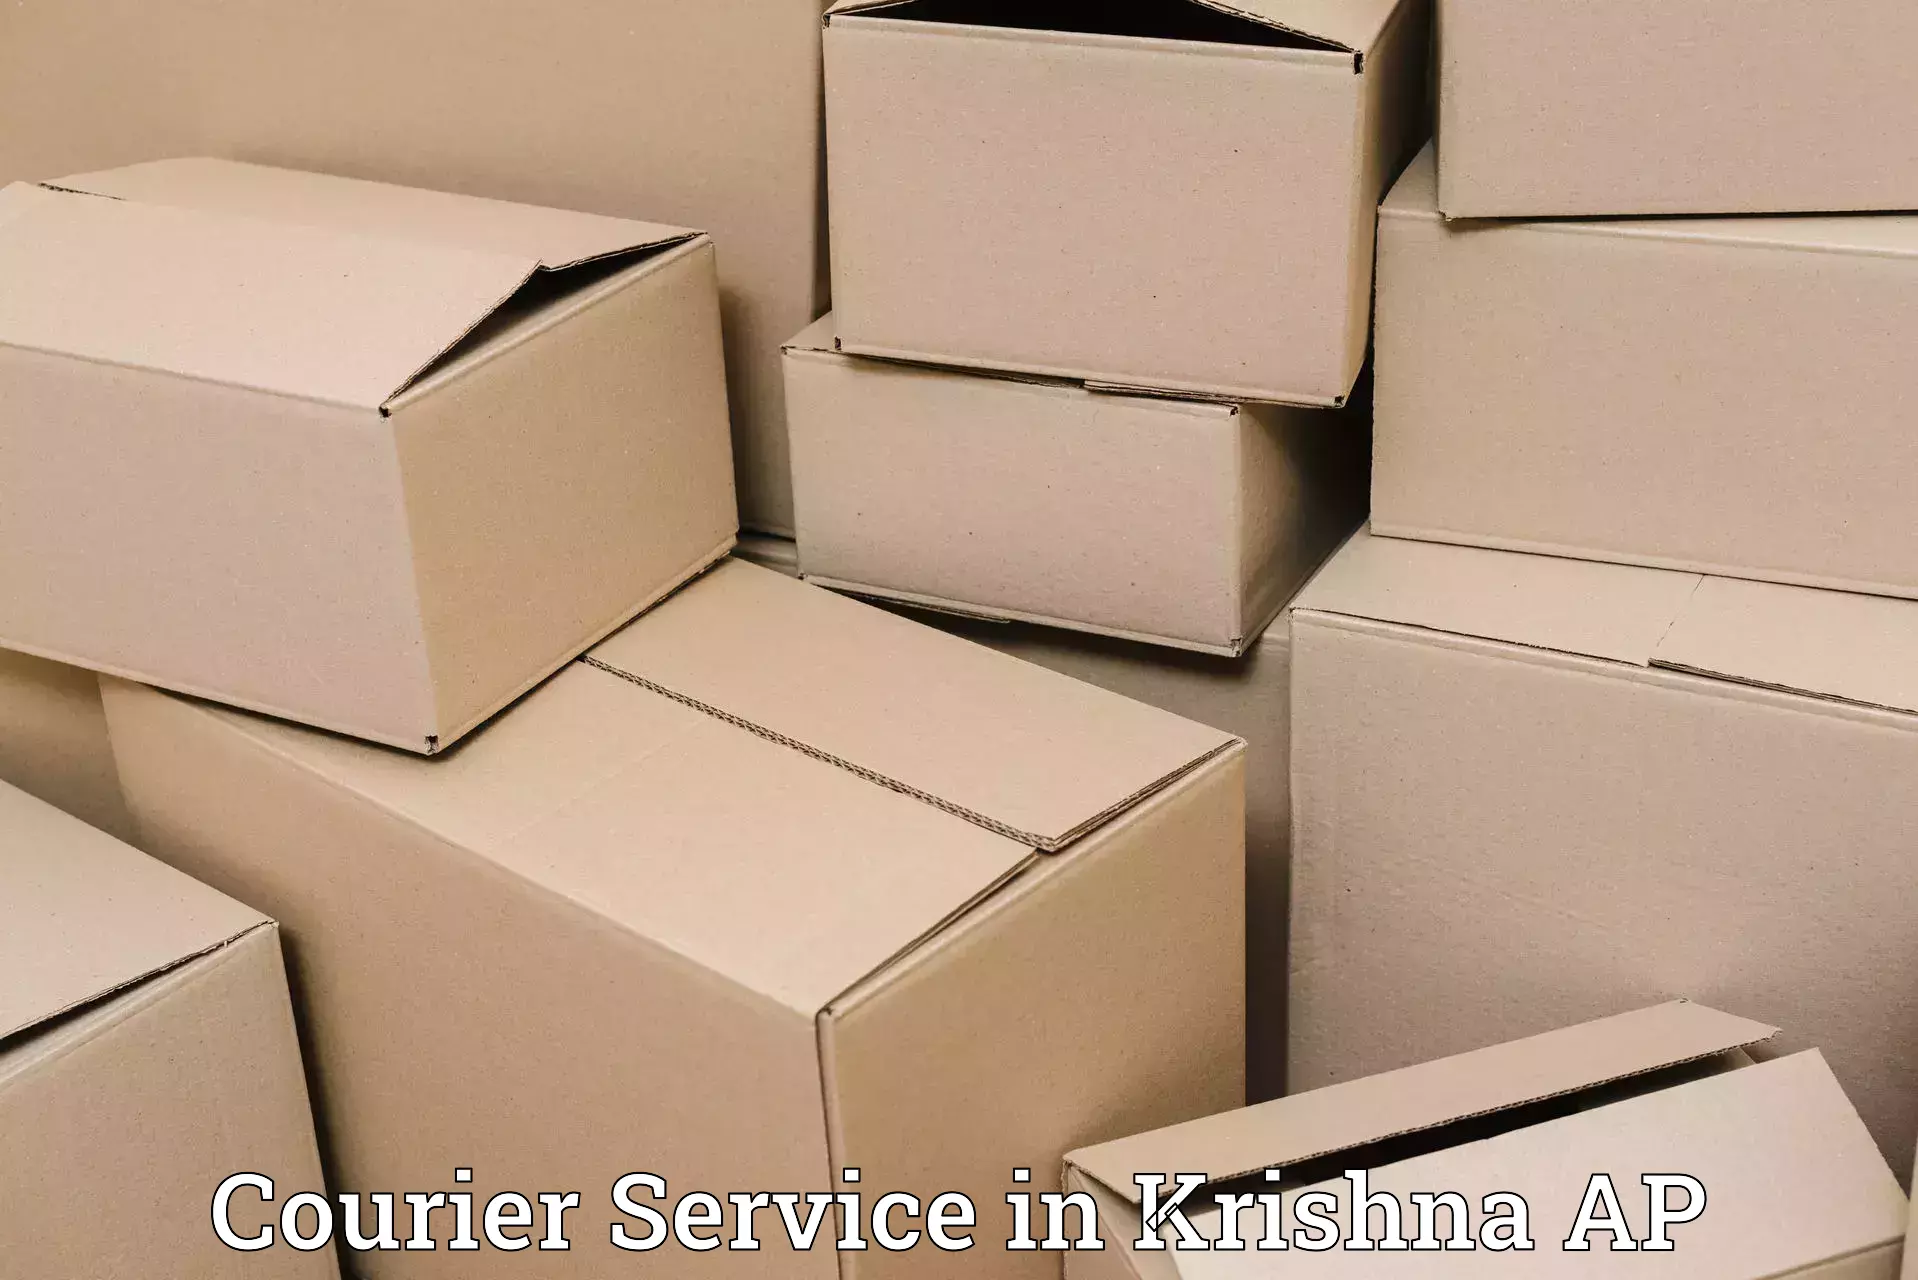 Return courier service in Krishna AP